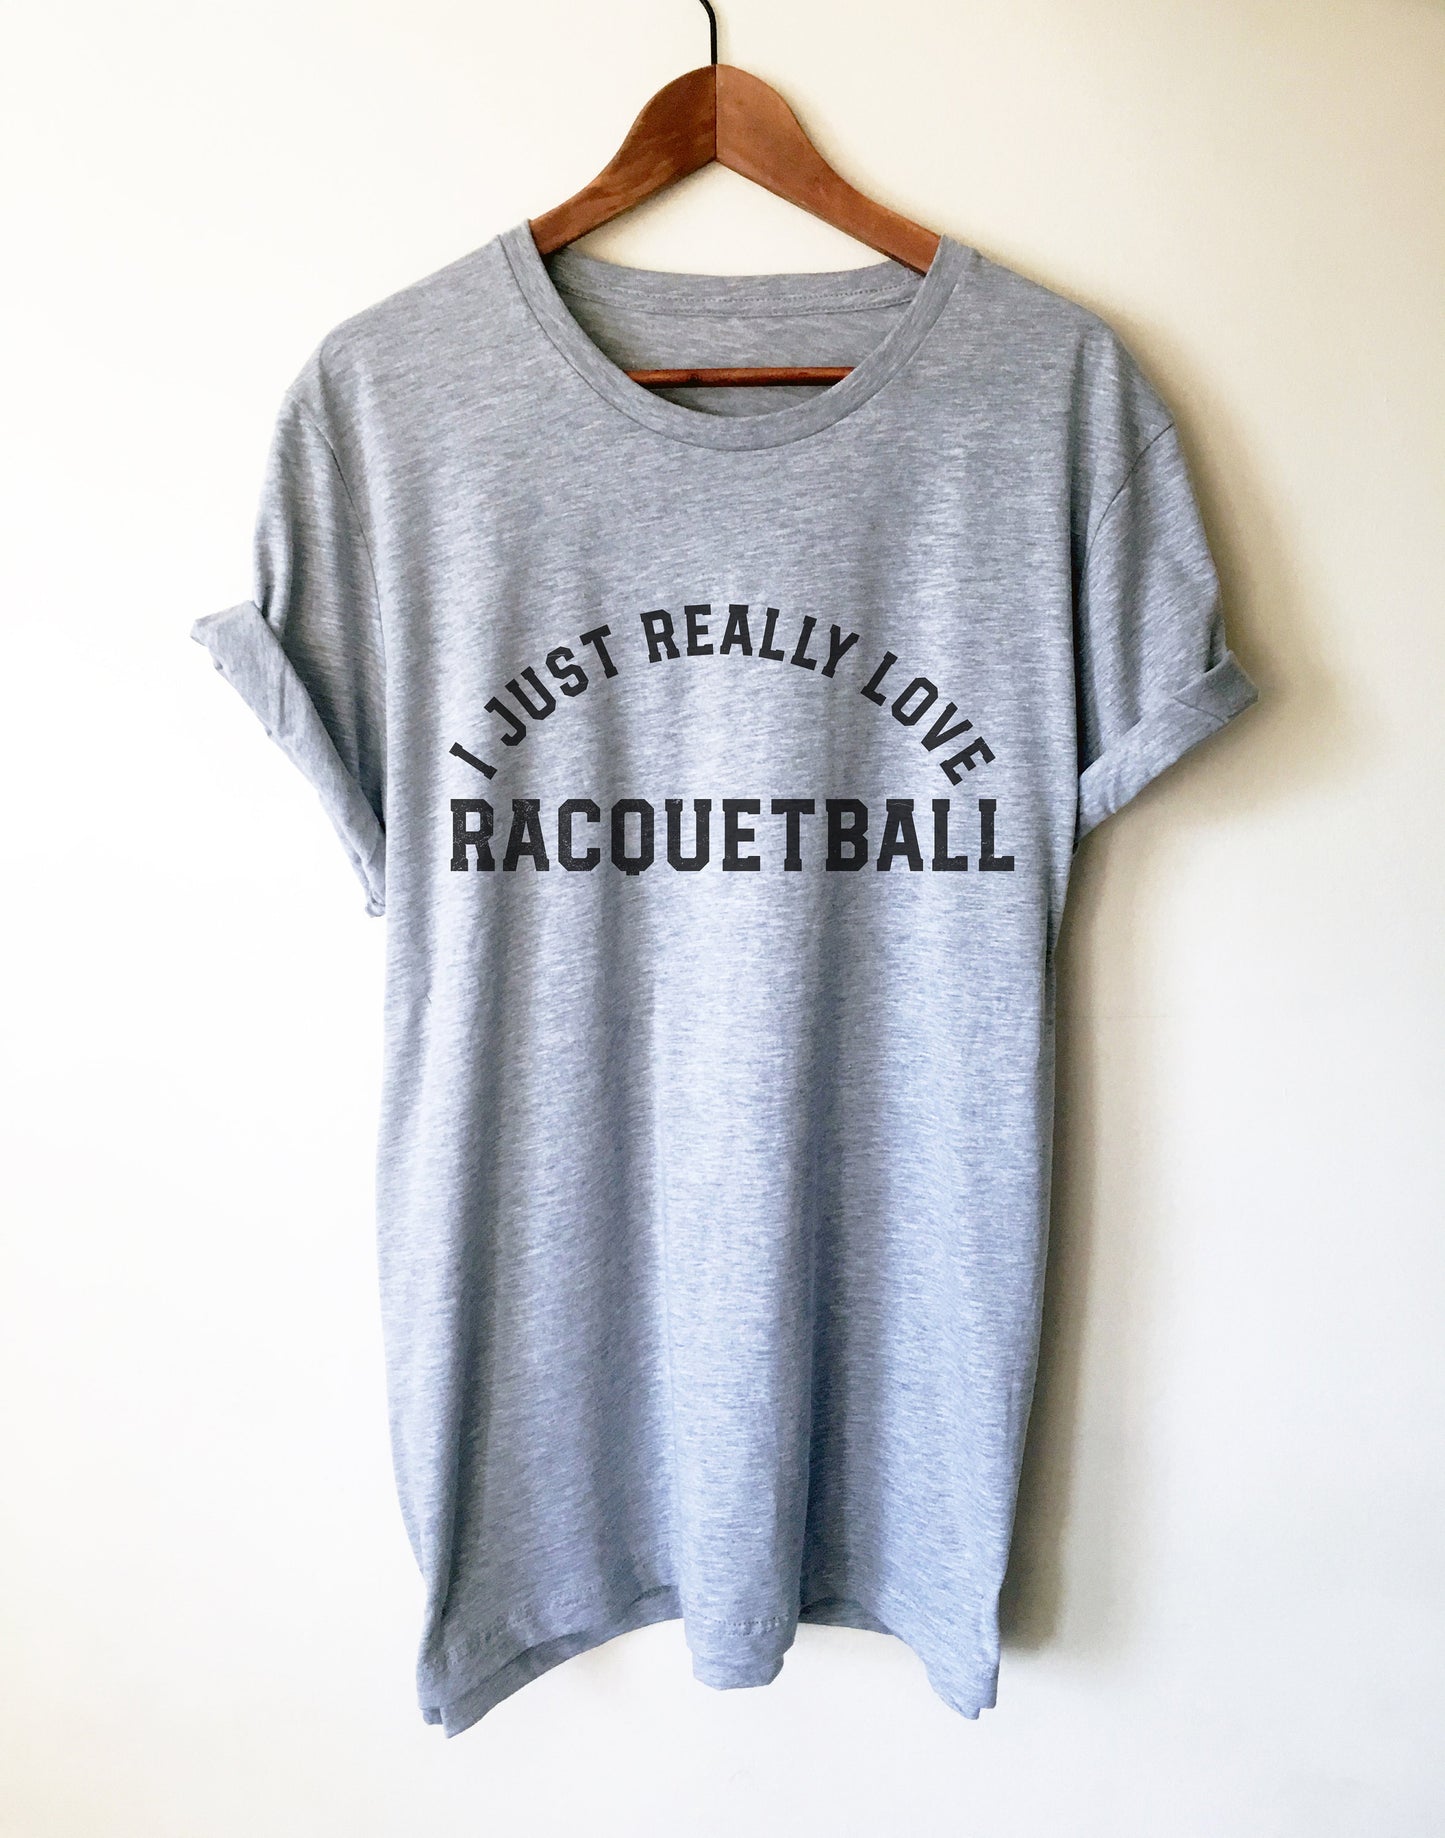 Racquetball Gift - Racquetball Shirt, Racket Ball Shirt, Racquets Shirt, Racquets Gift, Rackets Gift, Tennis Racquet Shirt, Coach Gift